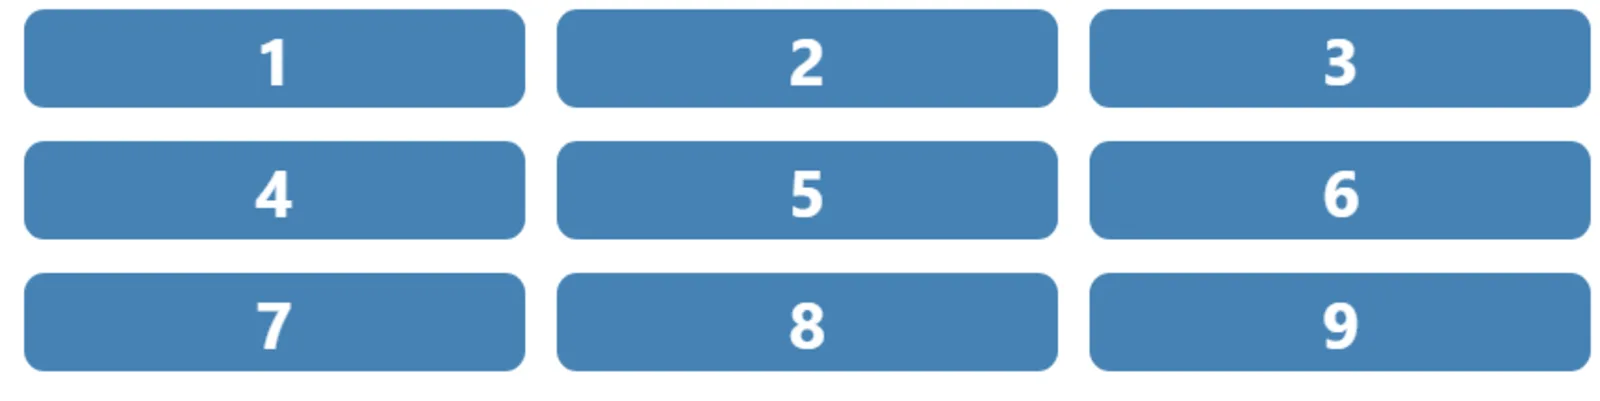 9 boutons bleus sur 3 colonnes, dans l'ordre numérique 1, 2, 3, puis ligne suivante 4, 5, 6, puis ligne suivante 7, 8, 9.